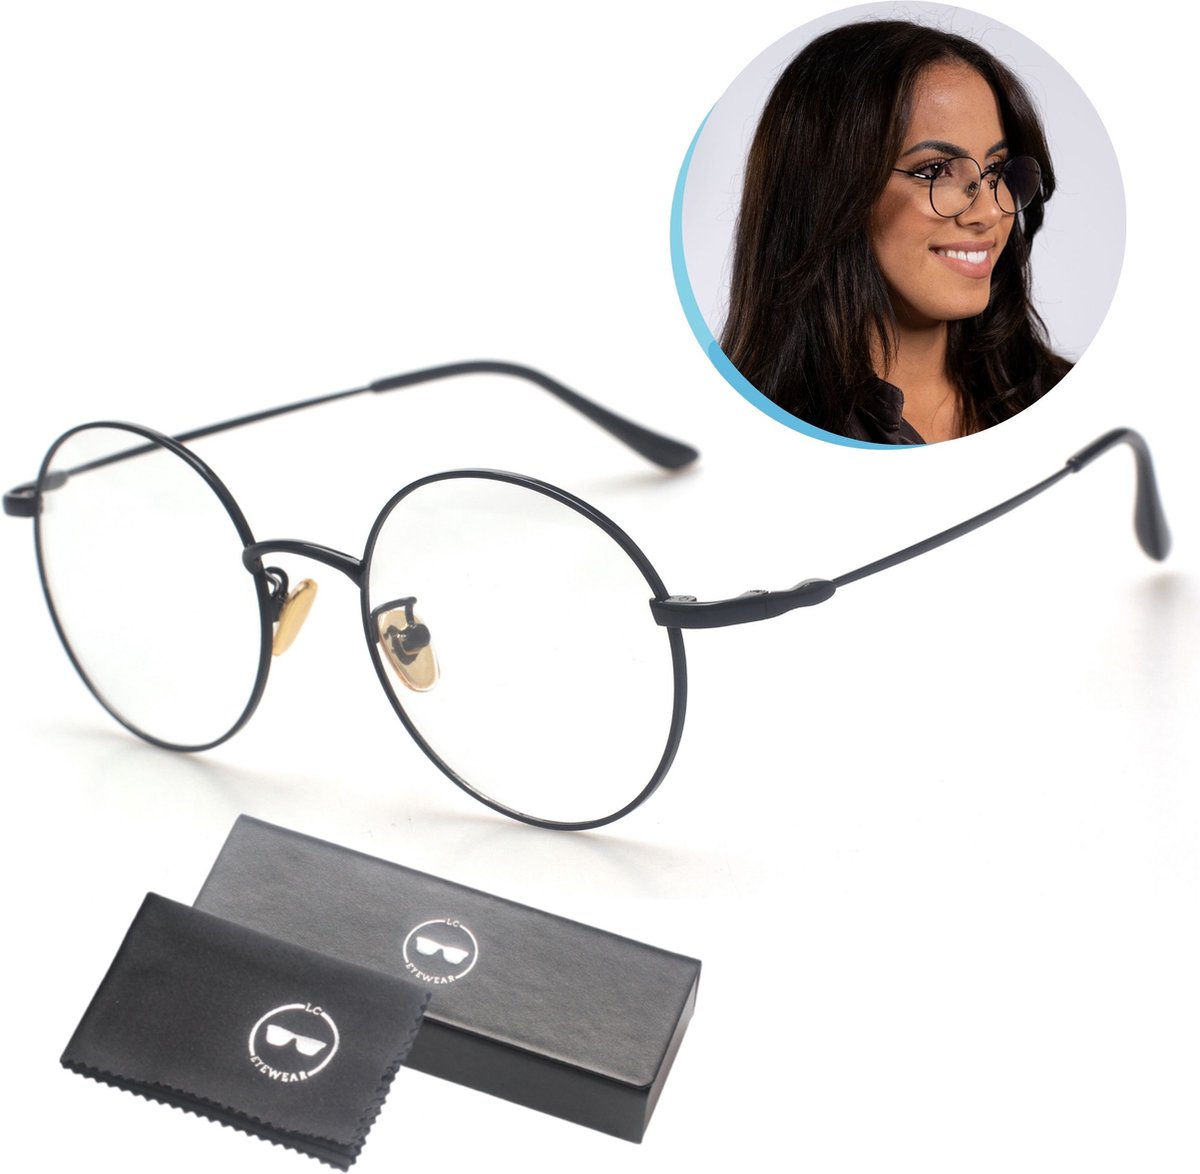 LC Eyewear Computerbril - Blauw Licht Bril - Blue Light Glasses - Beeldschermbril - Metaal - Unisex - Zwart